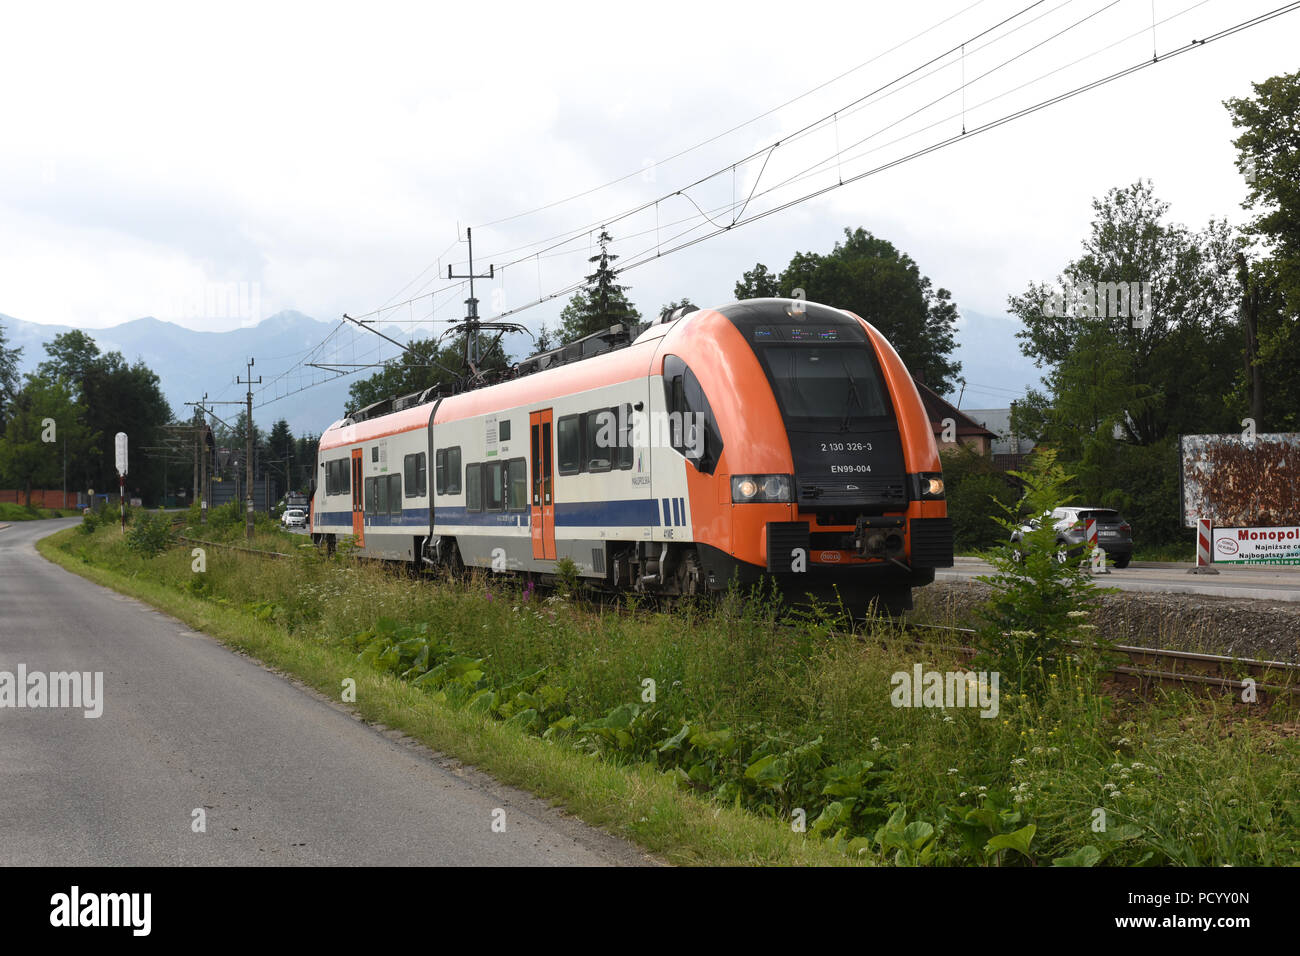 Locomotive train électrique à Poronin près de Zakopane Pologne Banque D'Images